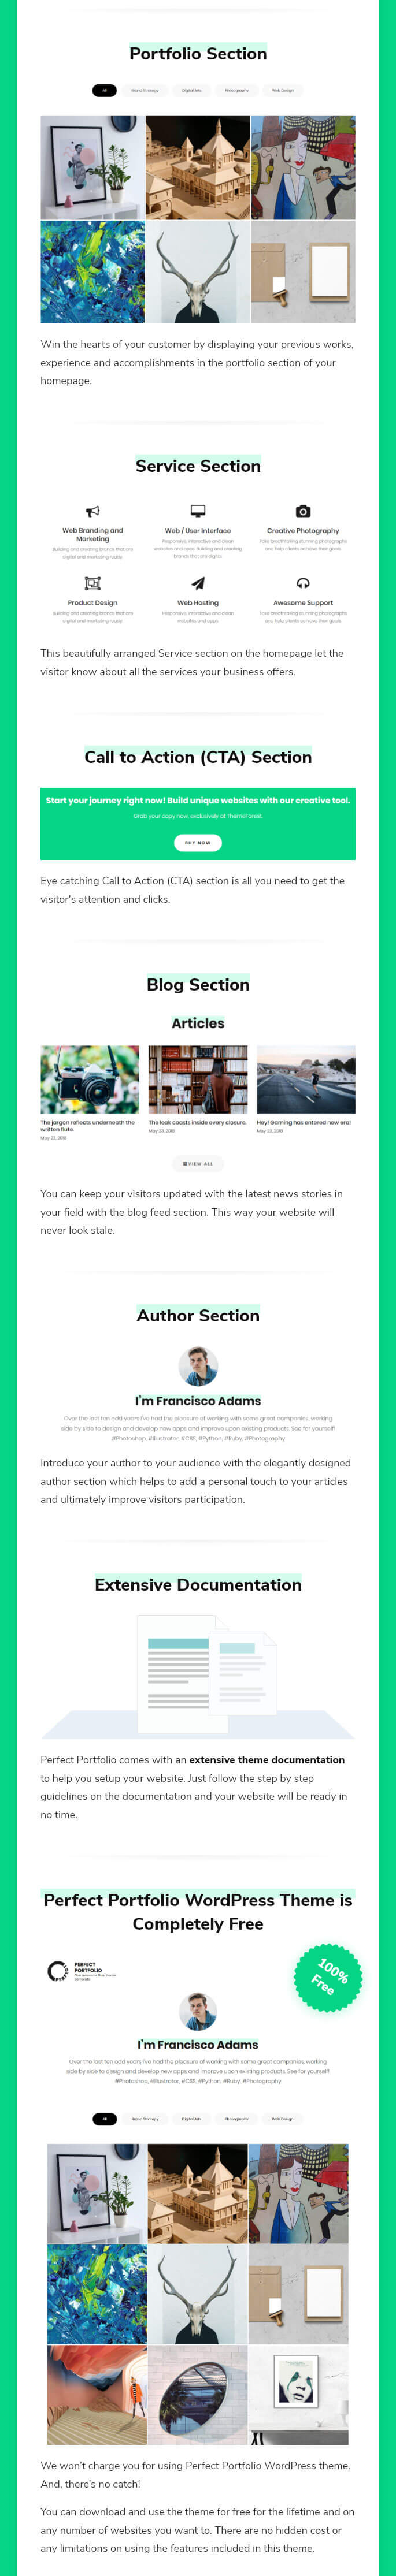 features of Perfect Portfolio free WordPress Theme